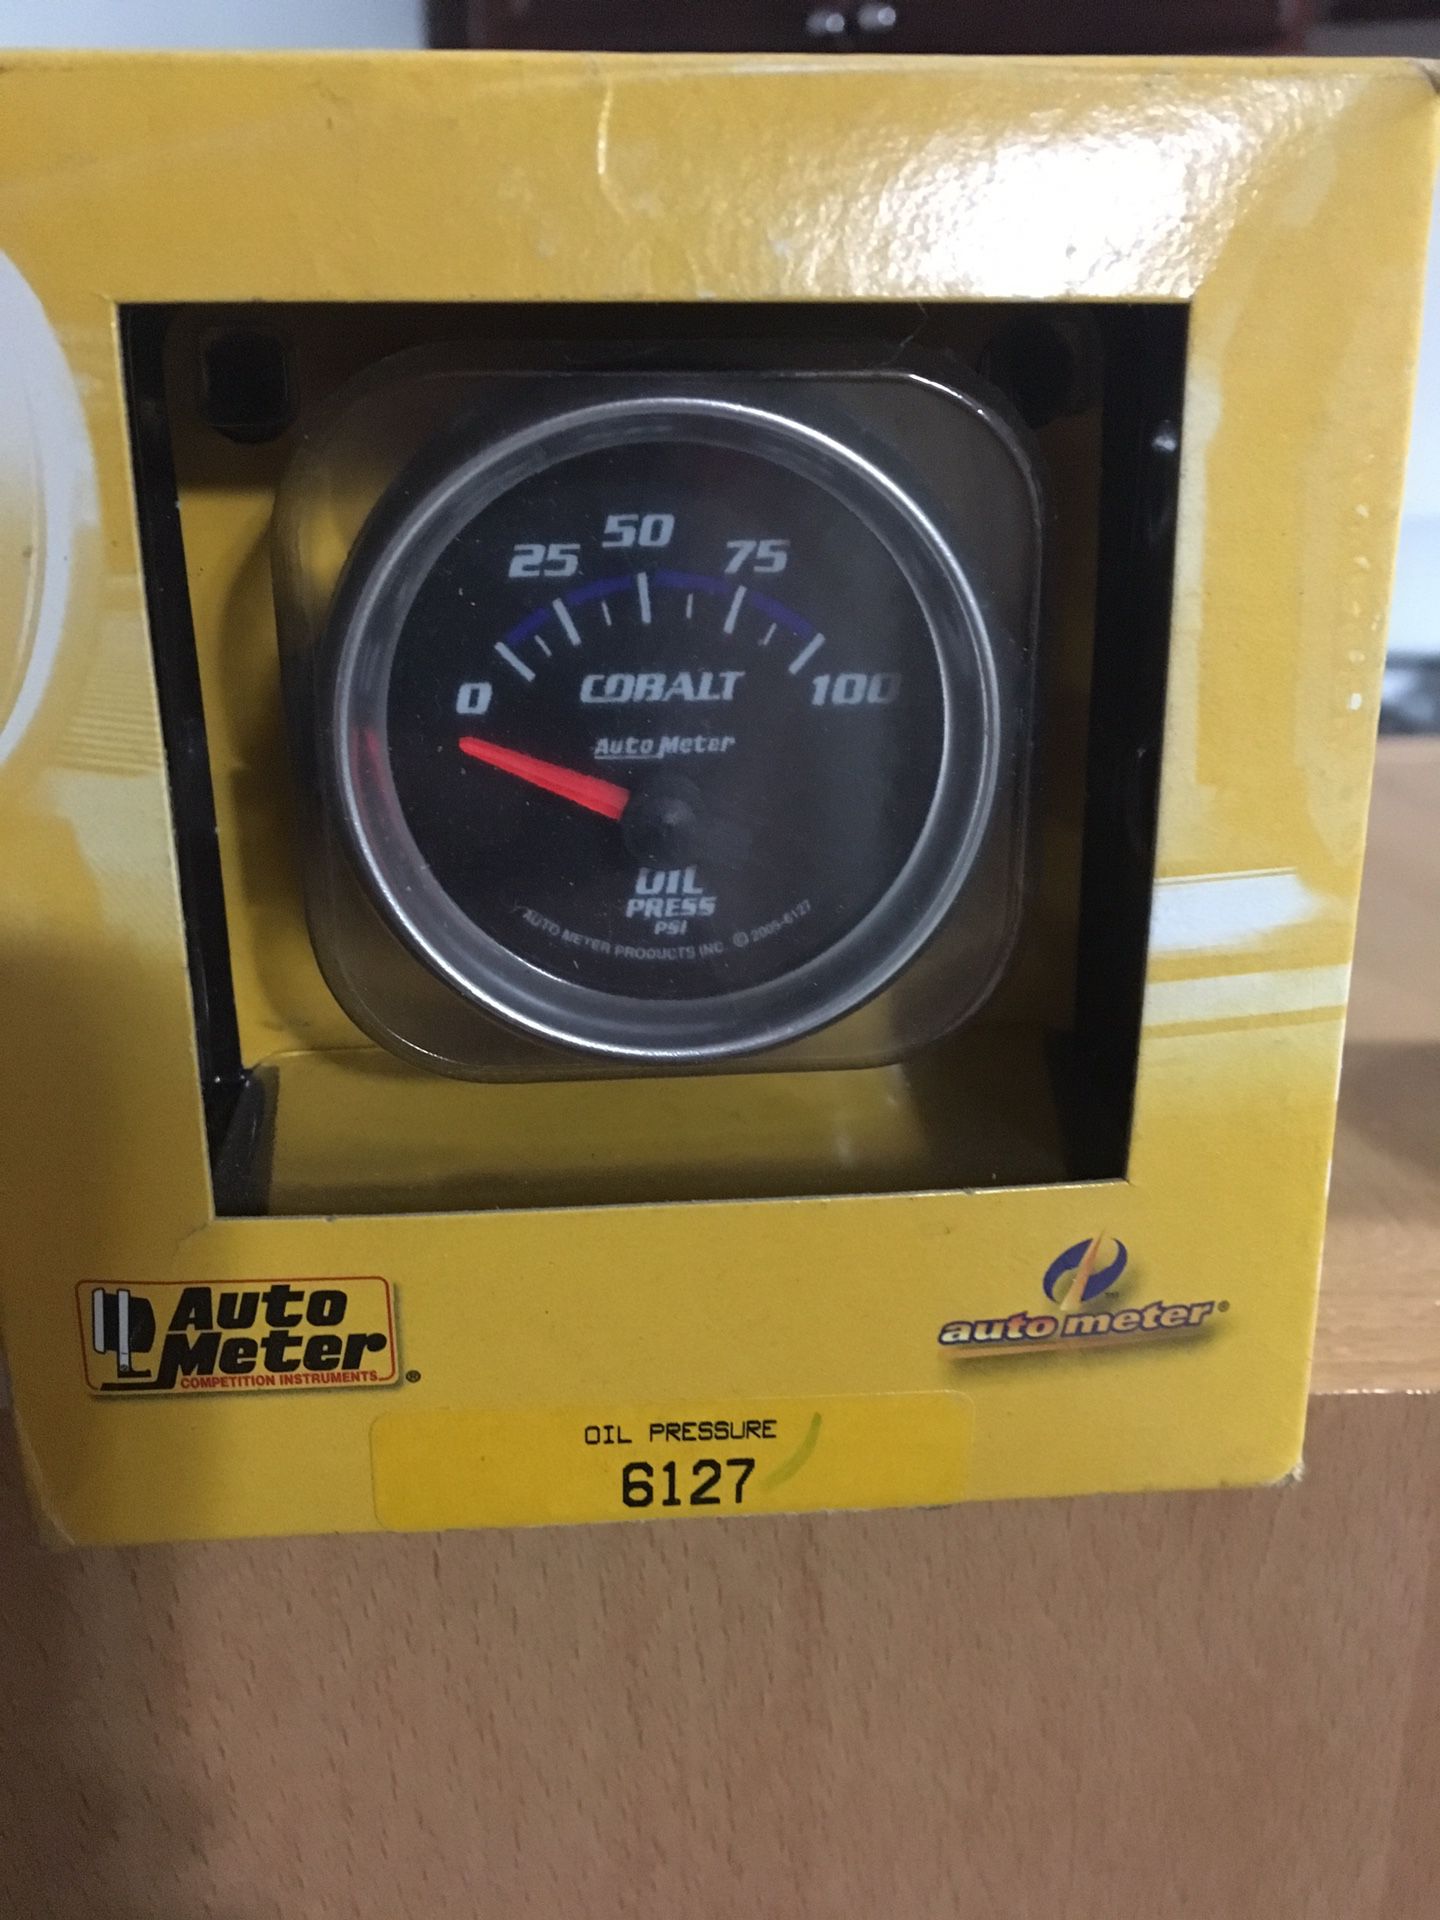 Autometer oil pressure guage